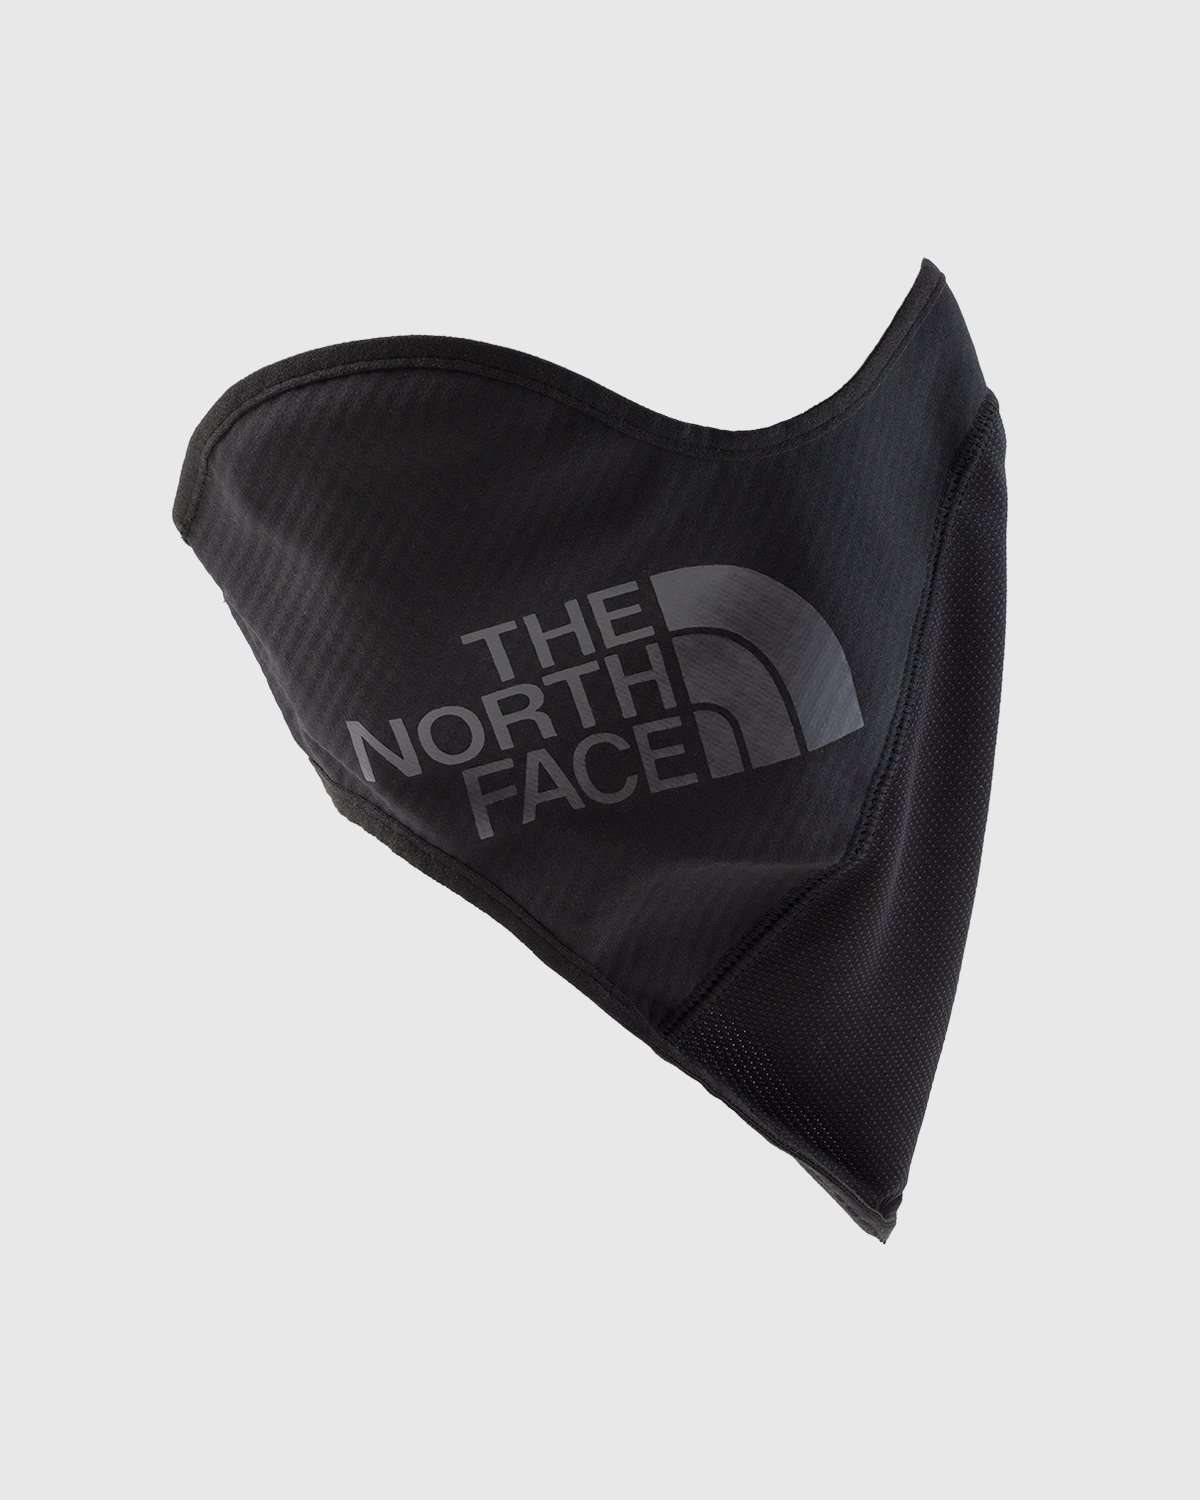 The North Face - Shredder Ski Mask Black - Accessories - Black - Image 3